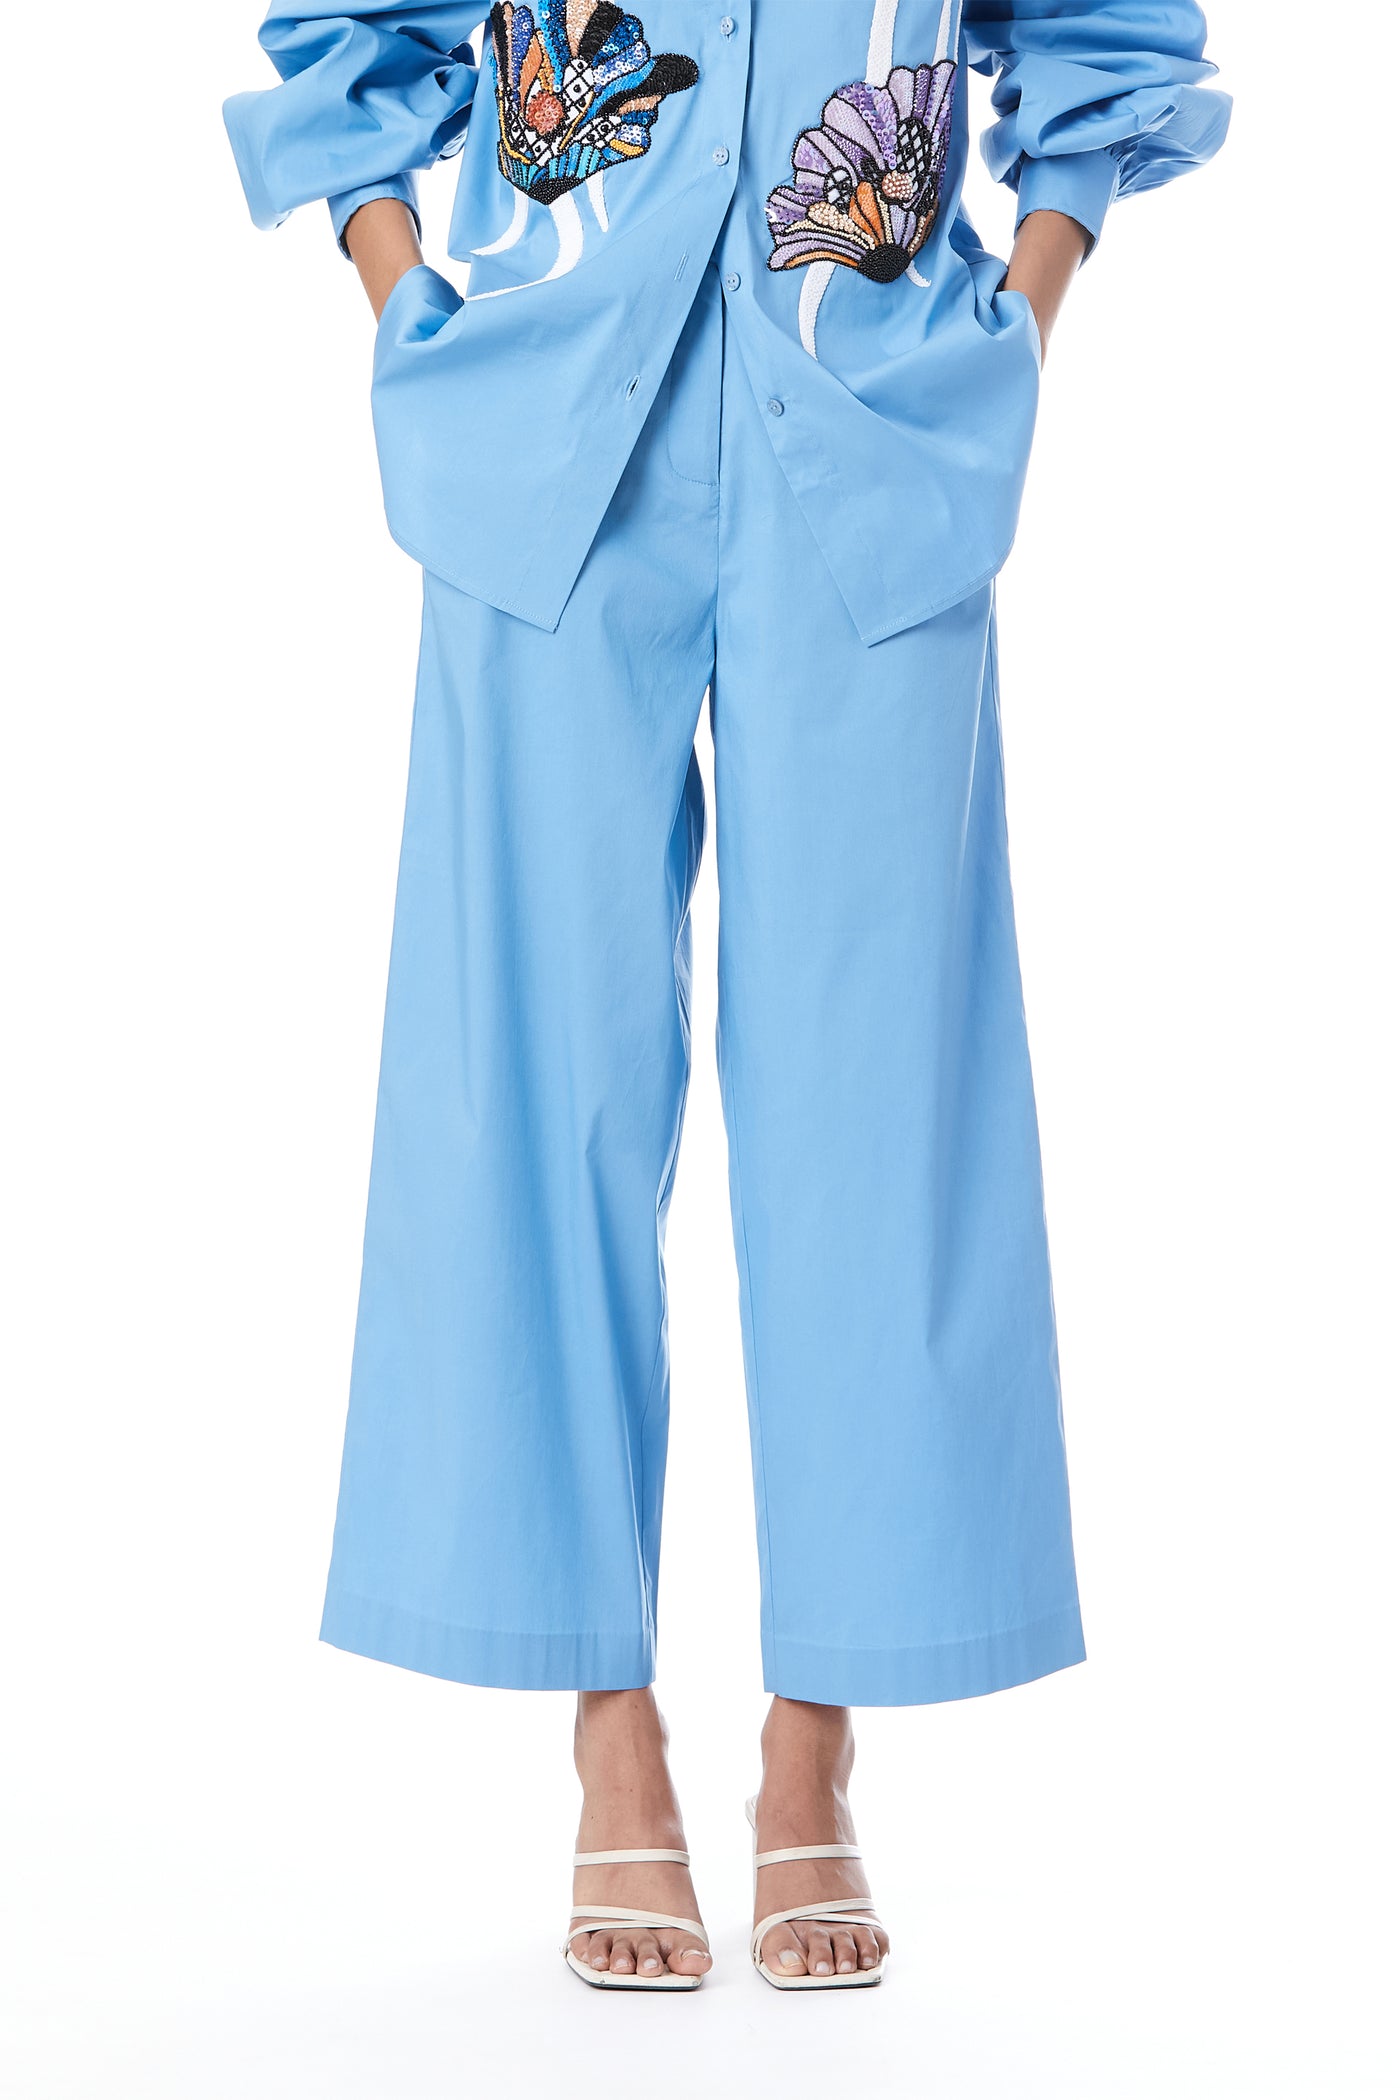 Label Kanika Goyal Solid Ankle Length Pants indian designer wear online shopping melange singapore